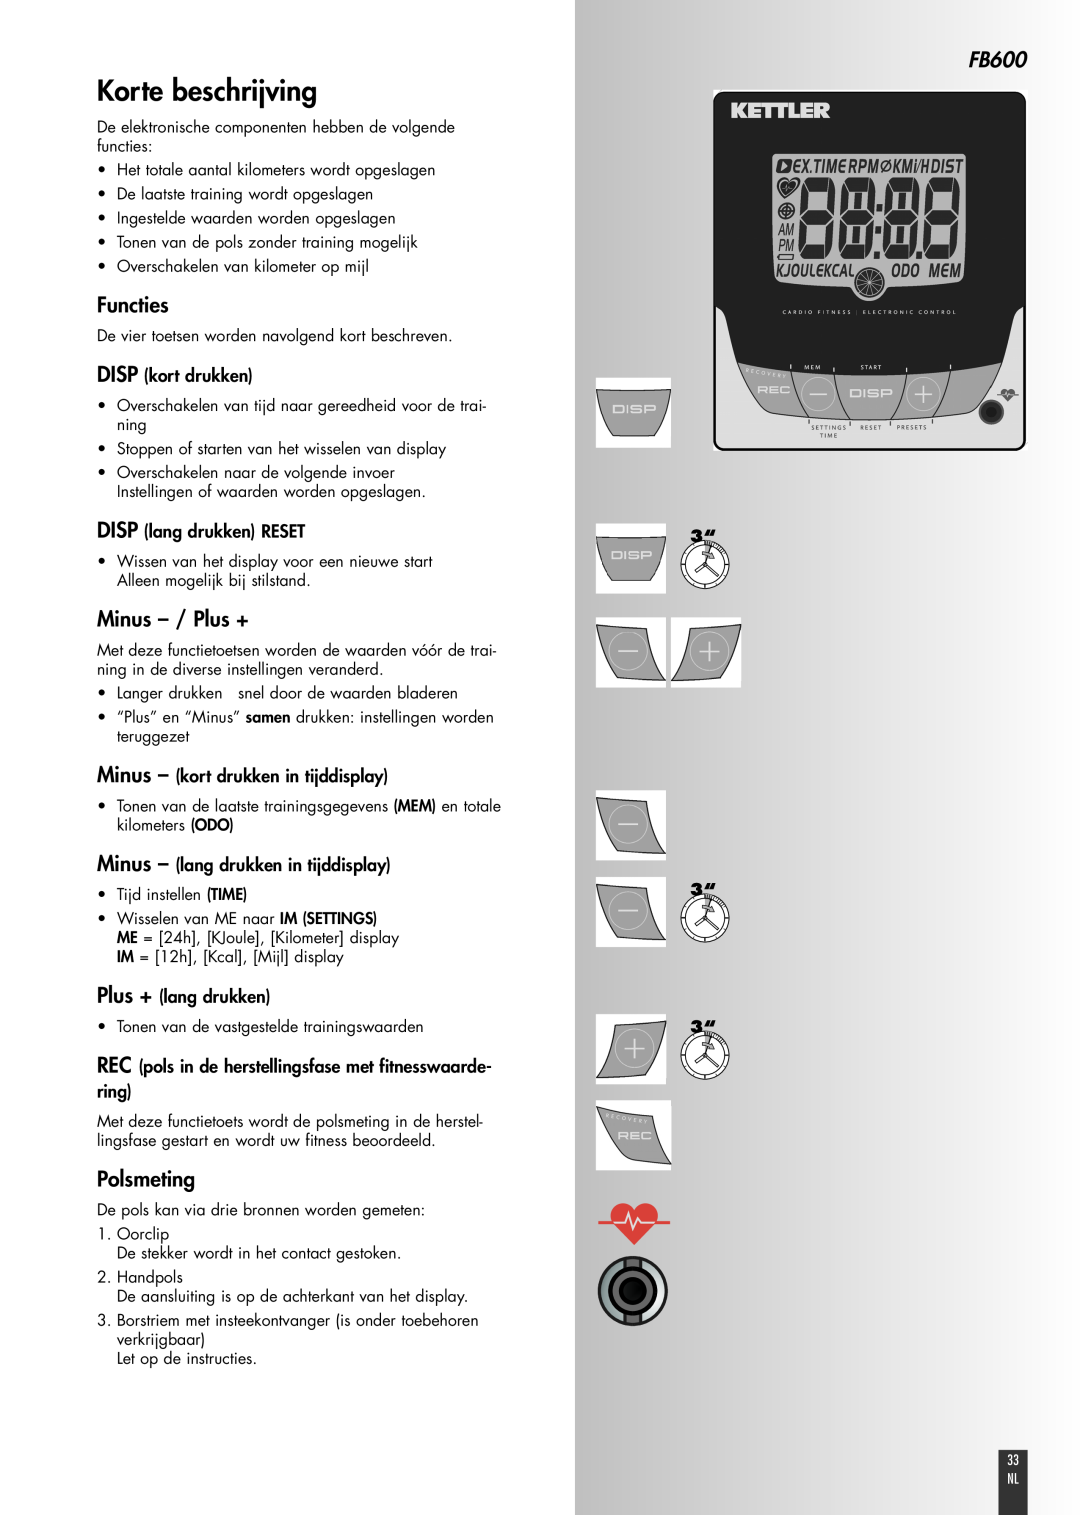 Kettler FB600 manual Korte beschrijving, Functies, Minus - / Plus +, Polsmeting, DISP kort drukken, DISP lang drukken RESET 